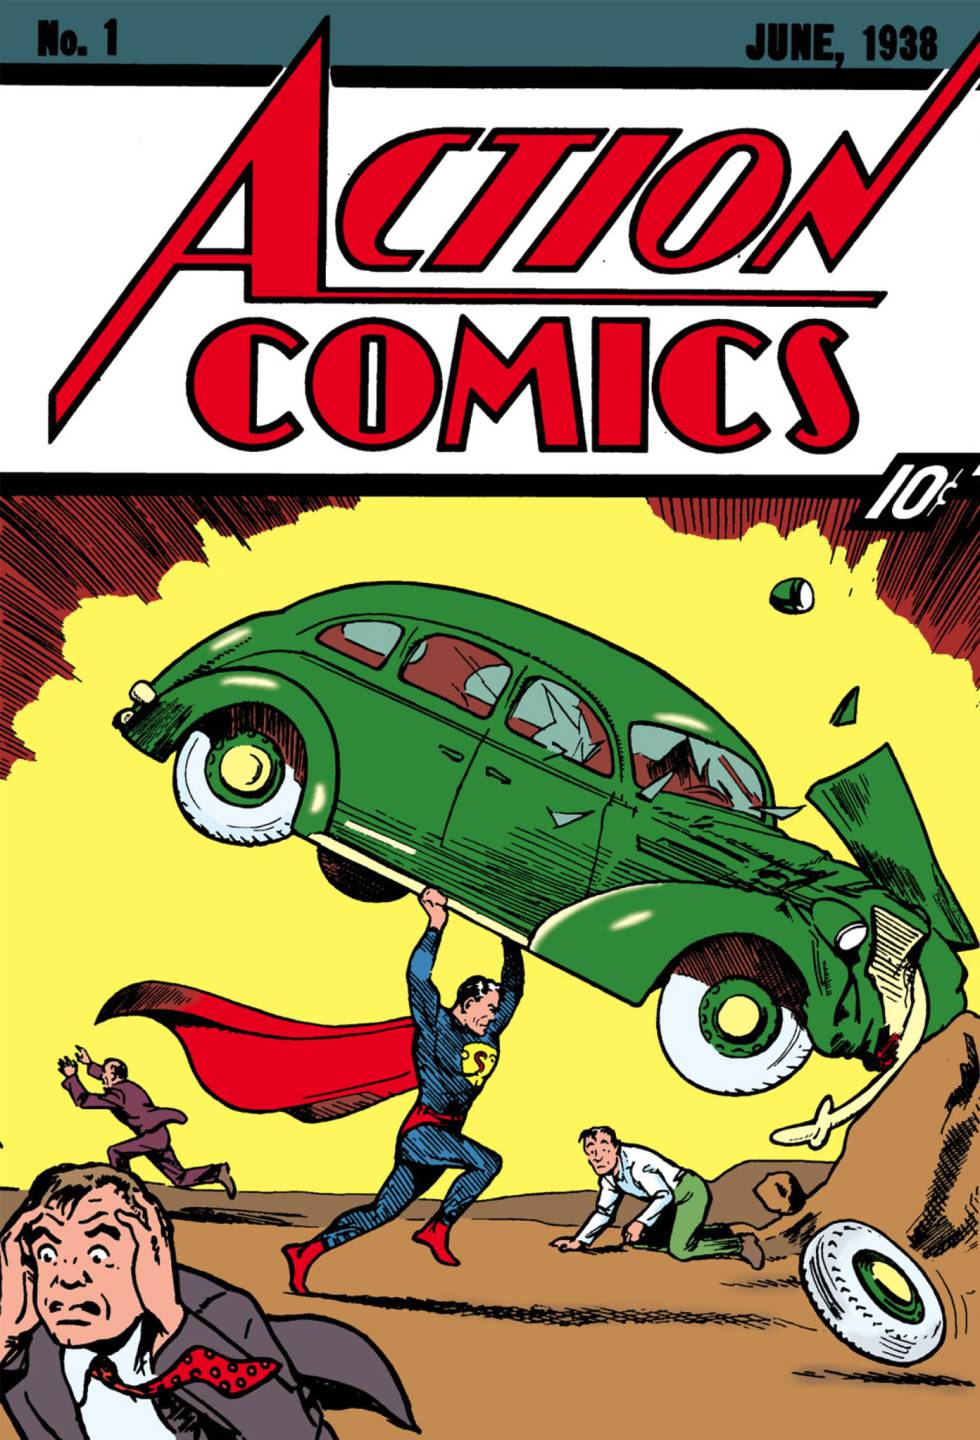 Portada del 'Action Comics nº1', el debut de Superman. / DC COMICS